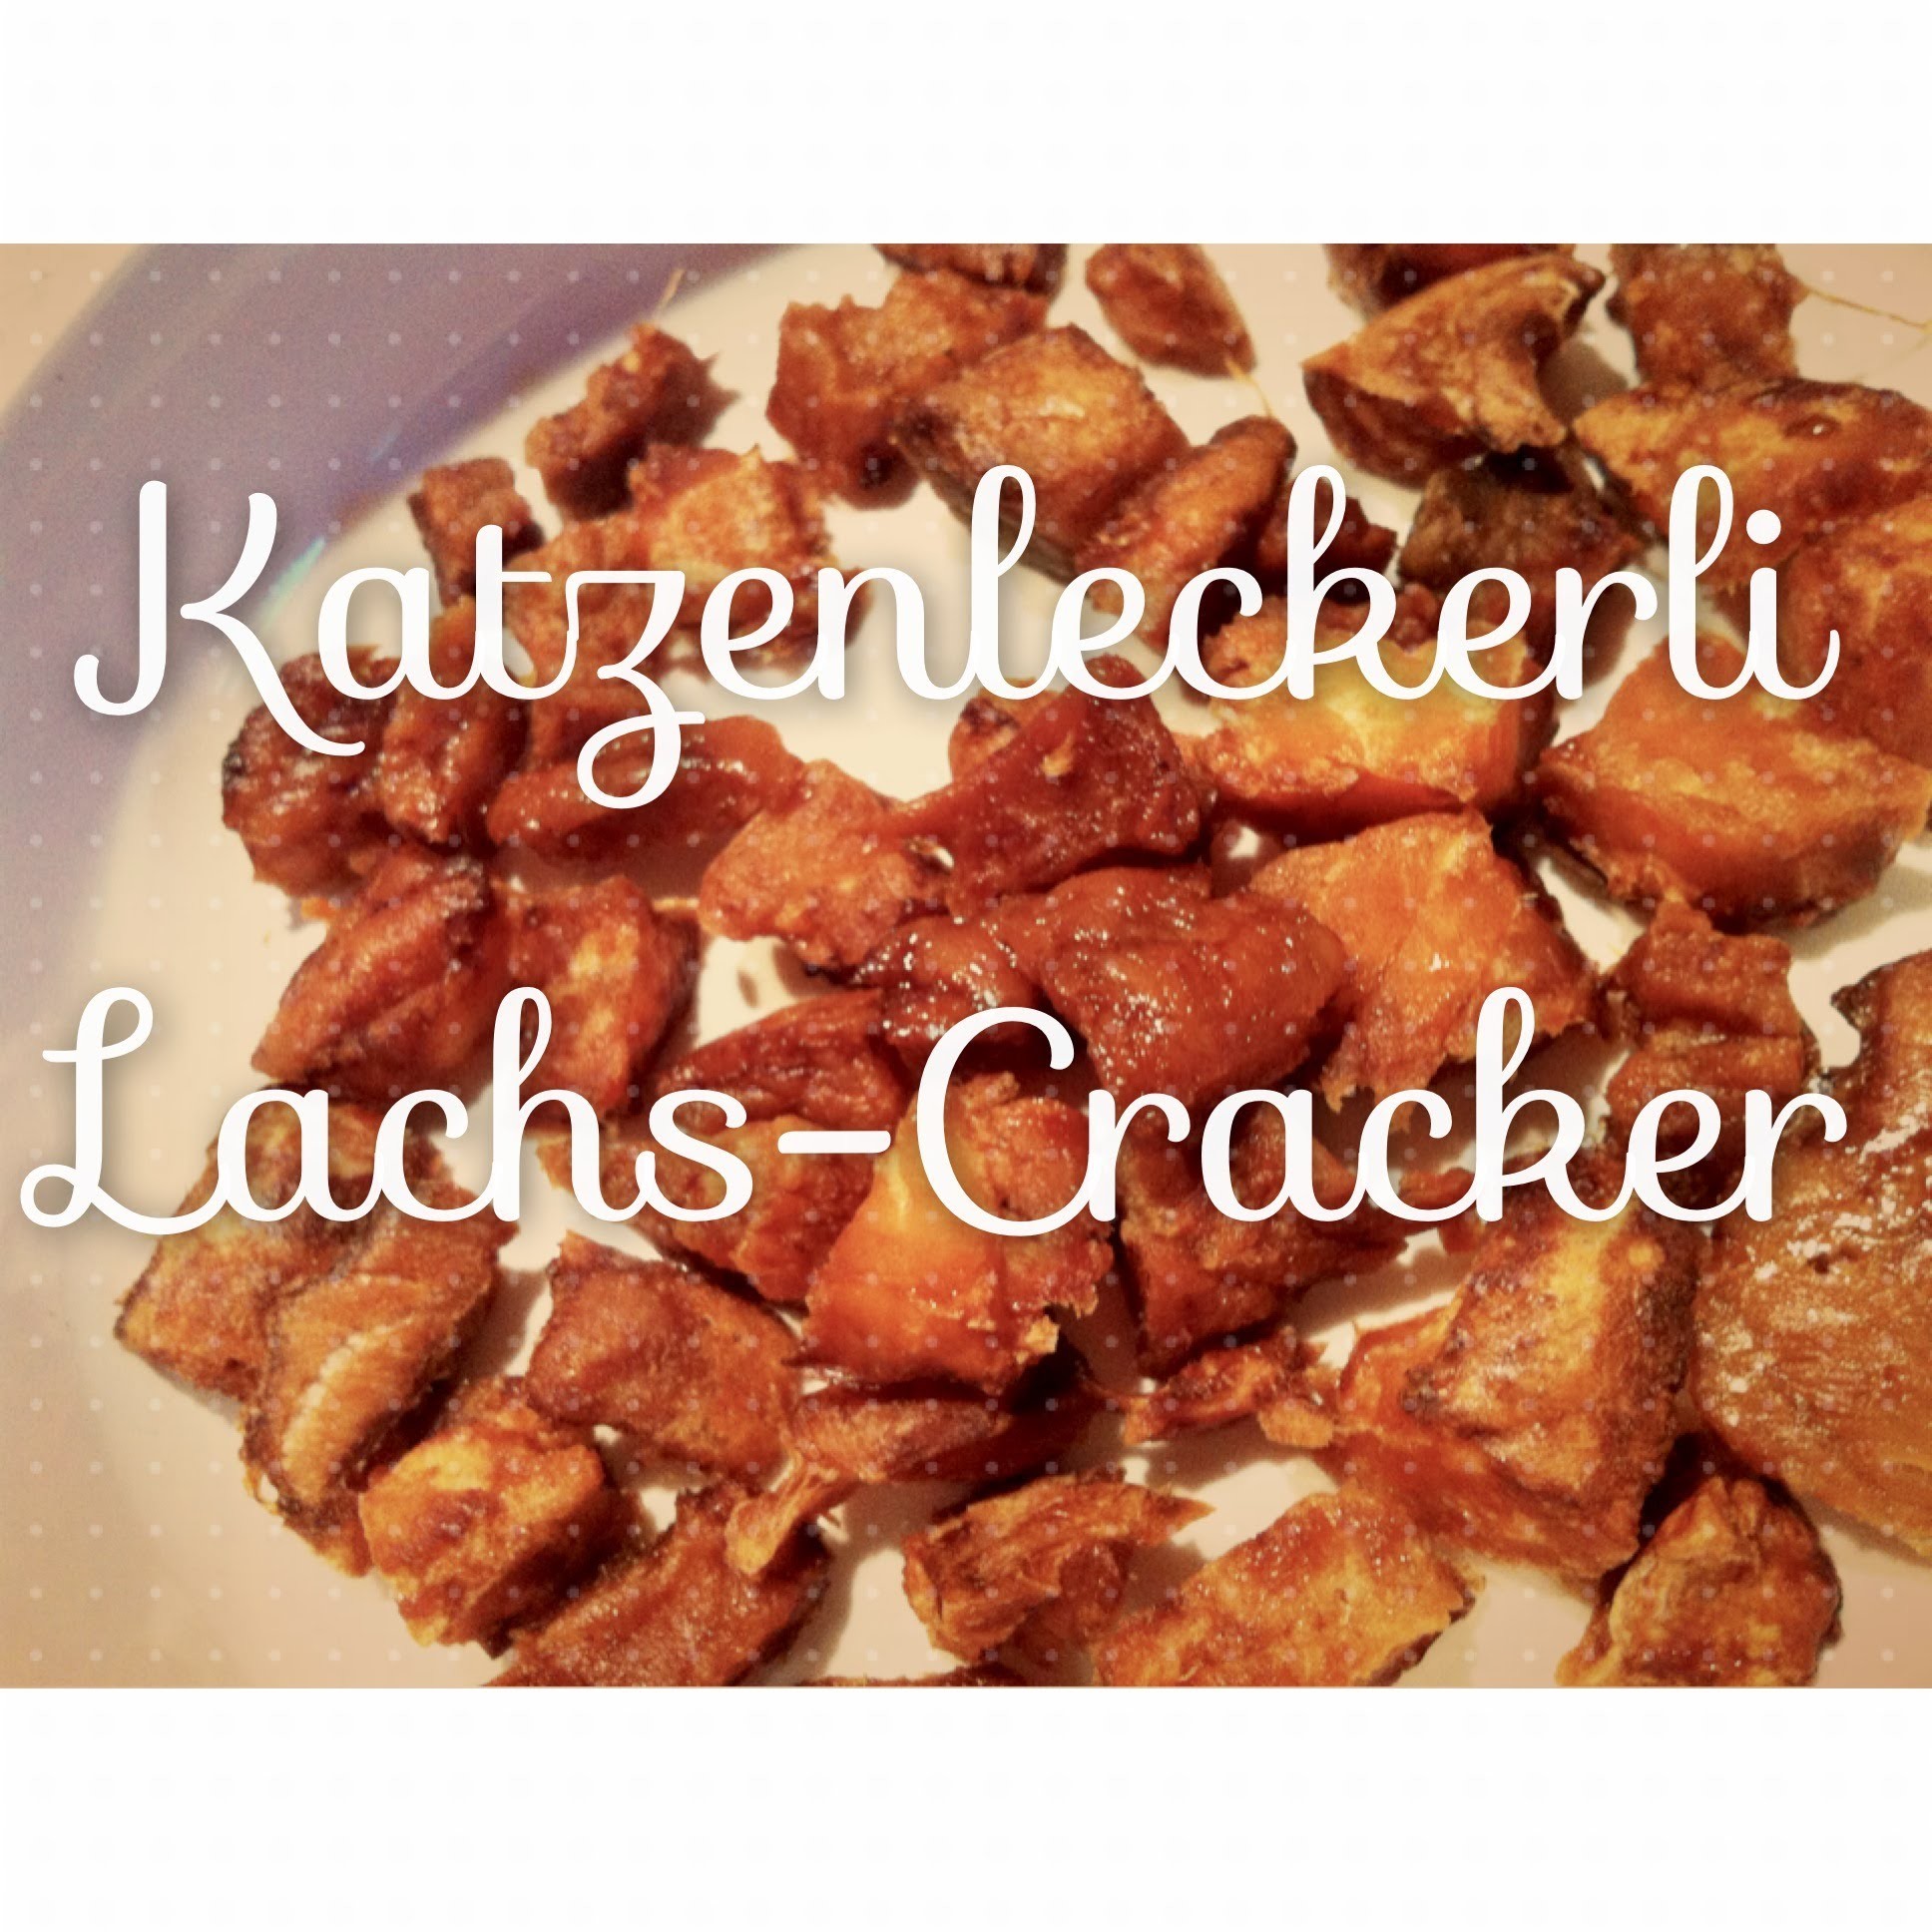 Gesunde Katzenleckerli Rezept: Lachs-Cracker